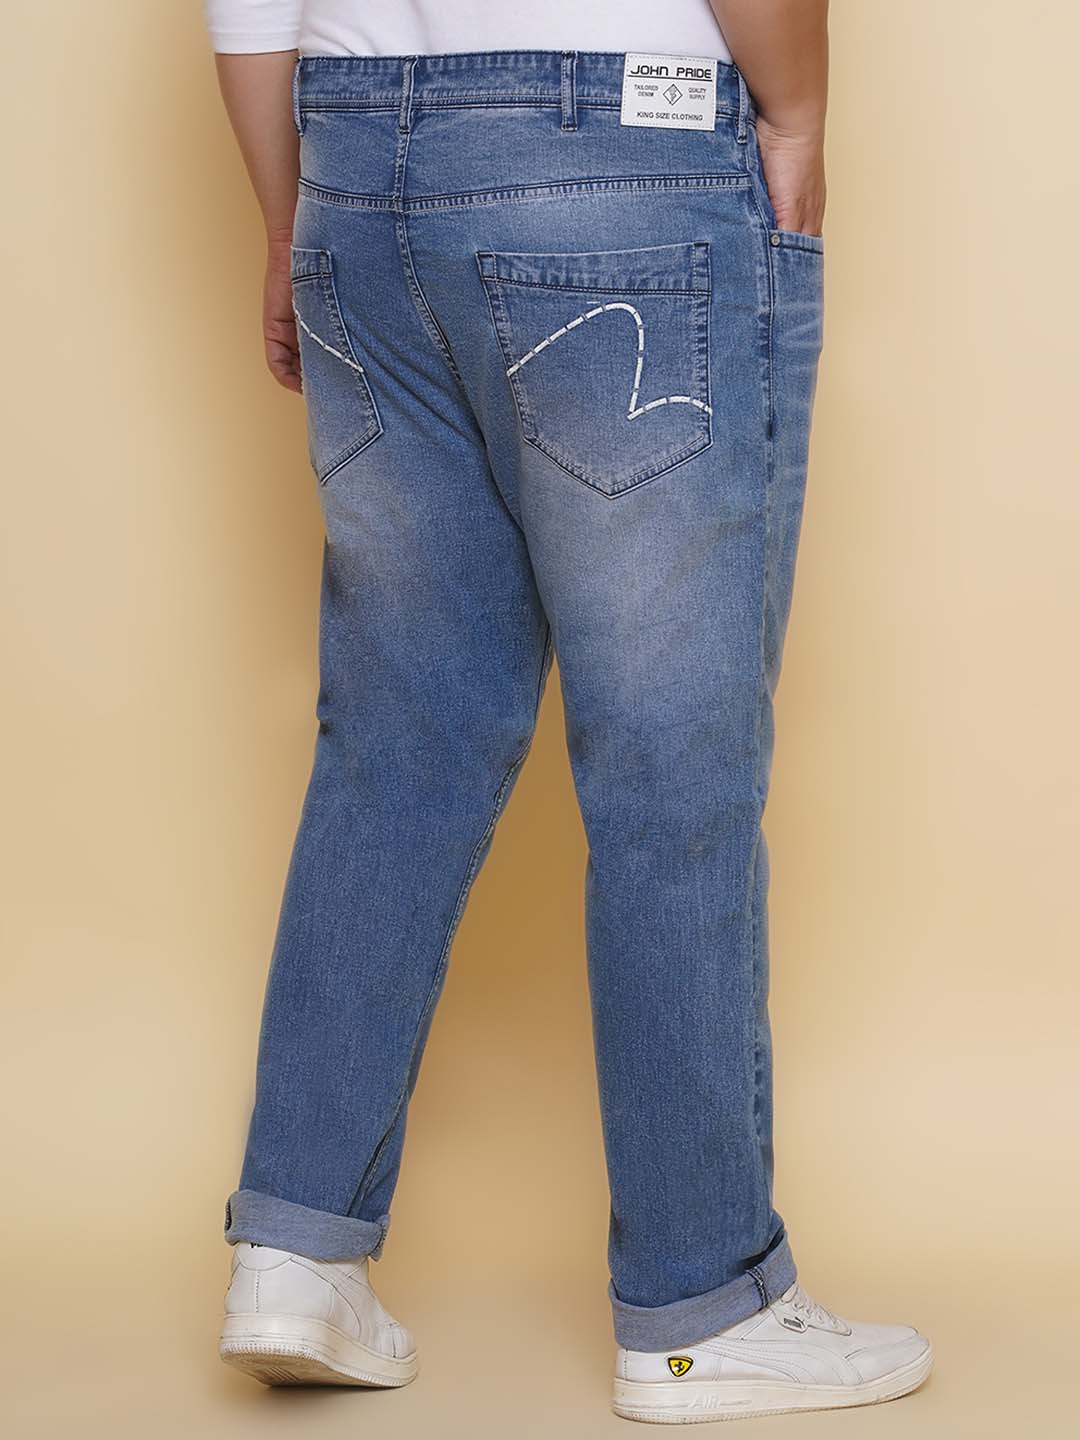 bottomwear/jeans/EJPJ25134/ejpj25134-5.jpg